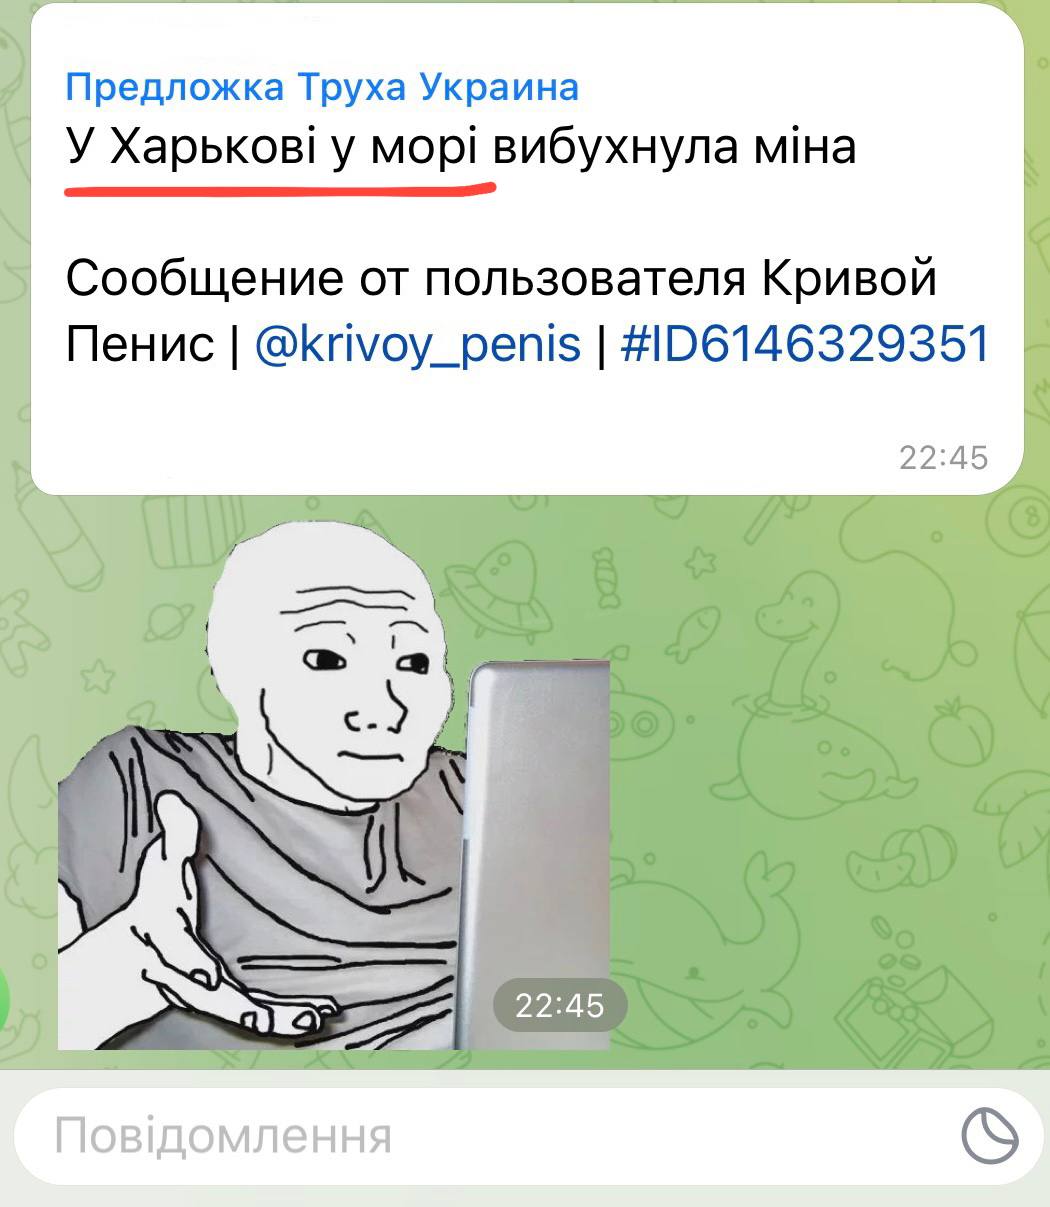 Новости украины телеграмм 365 (120) фото